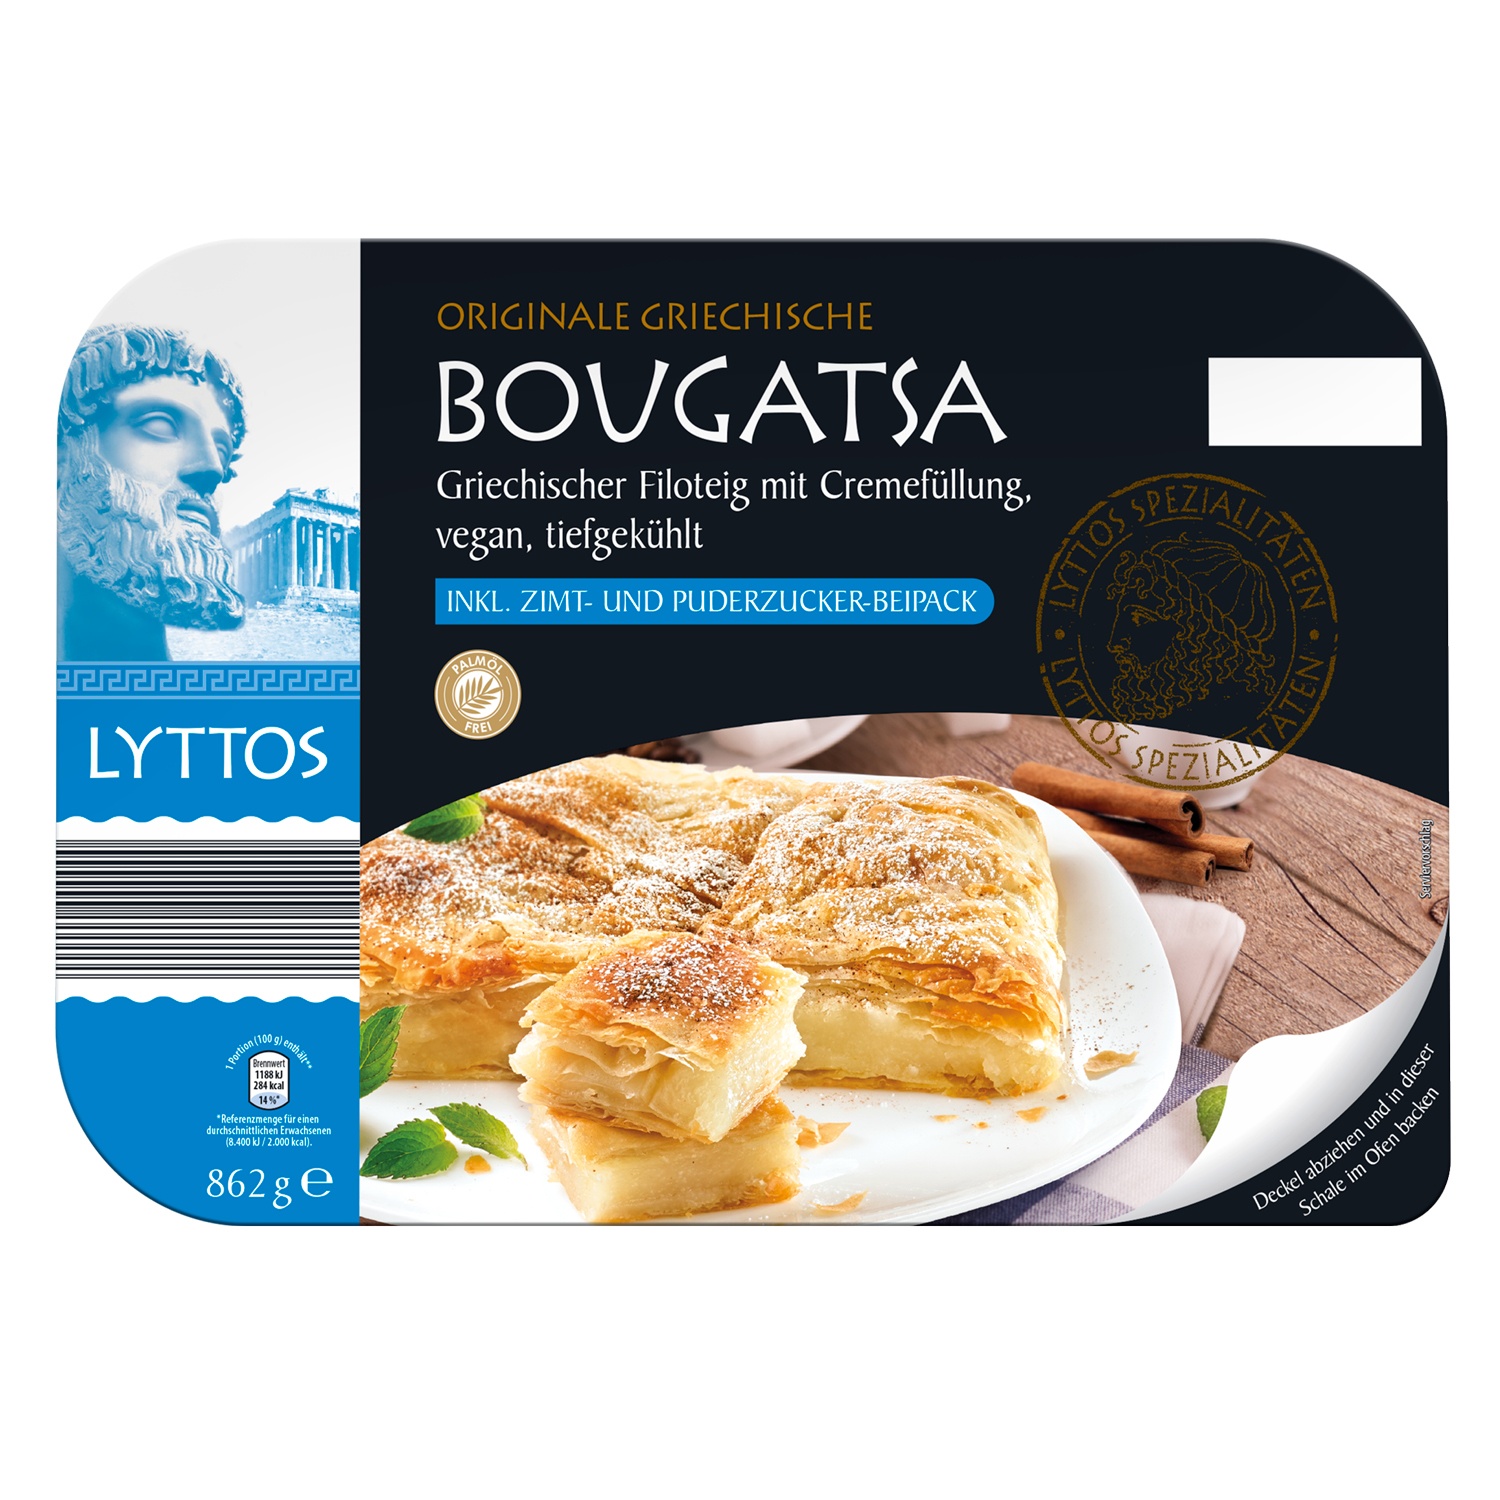 LYTTOS Originale griechische Bougatsa 862 g